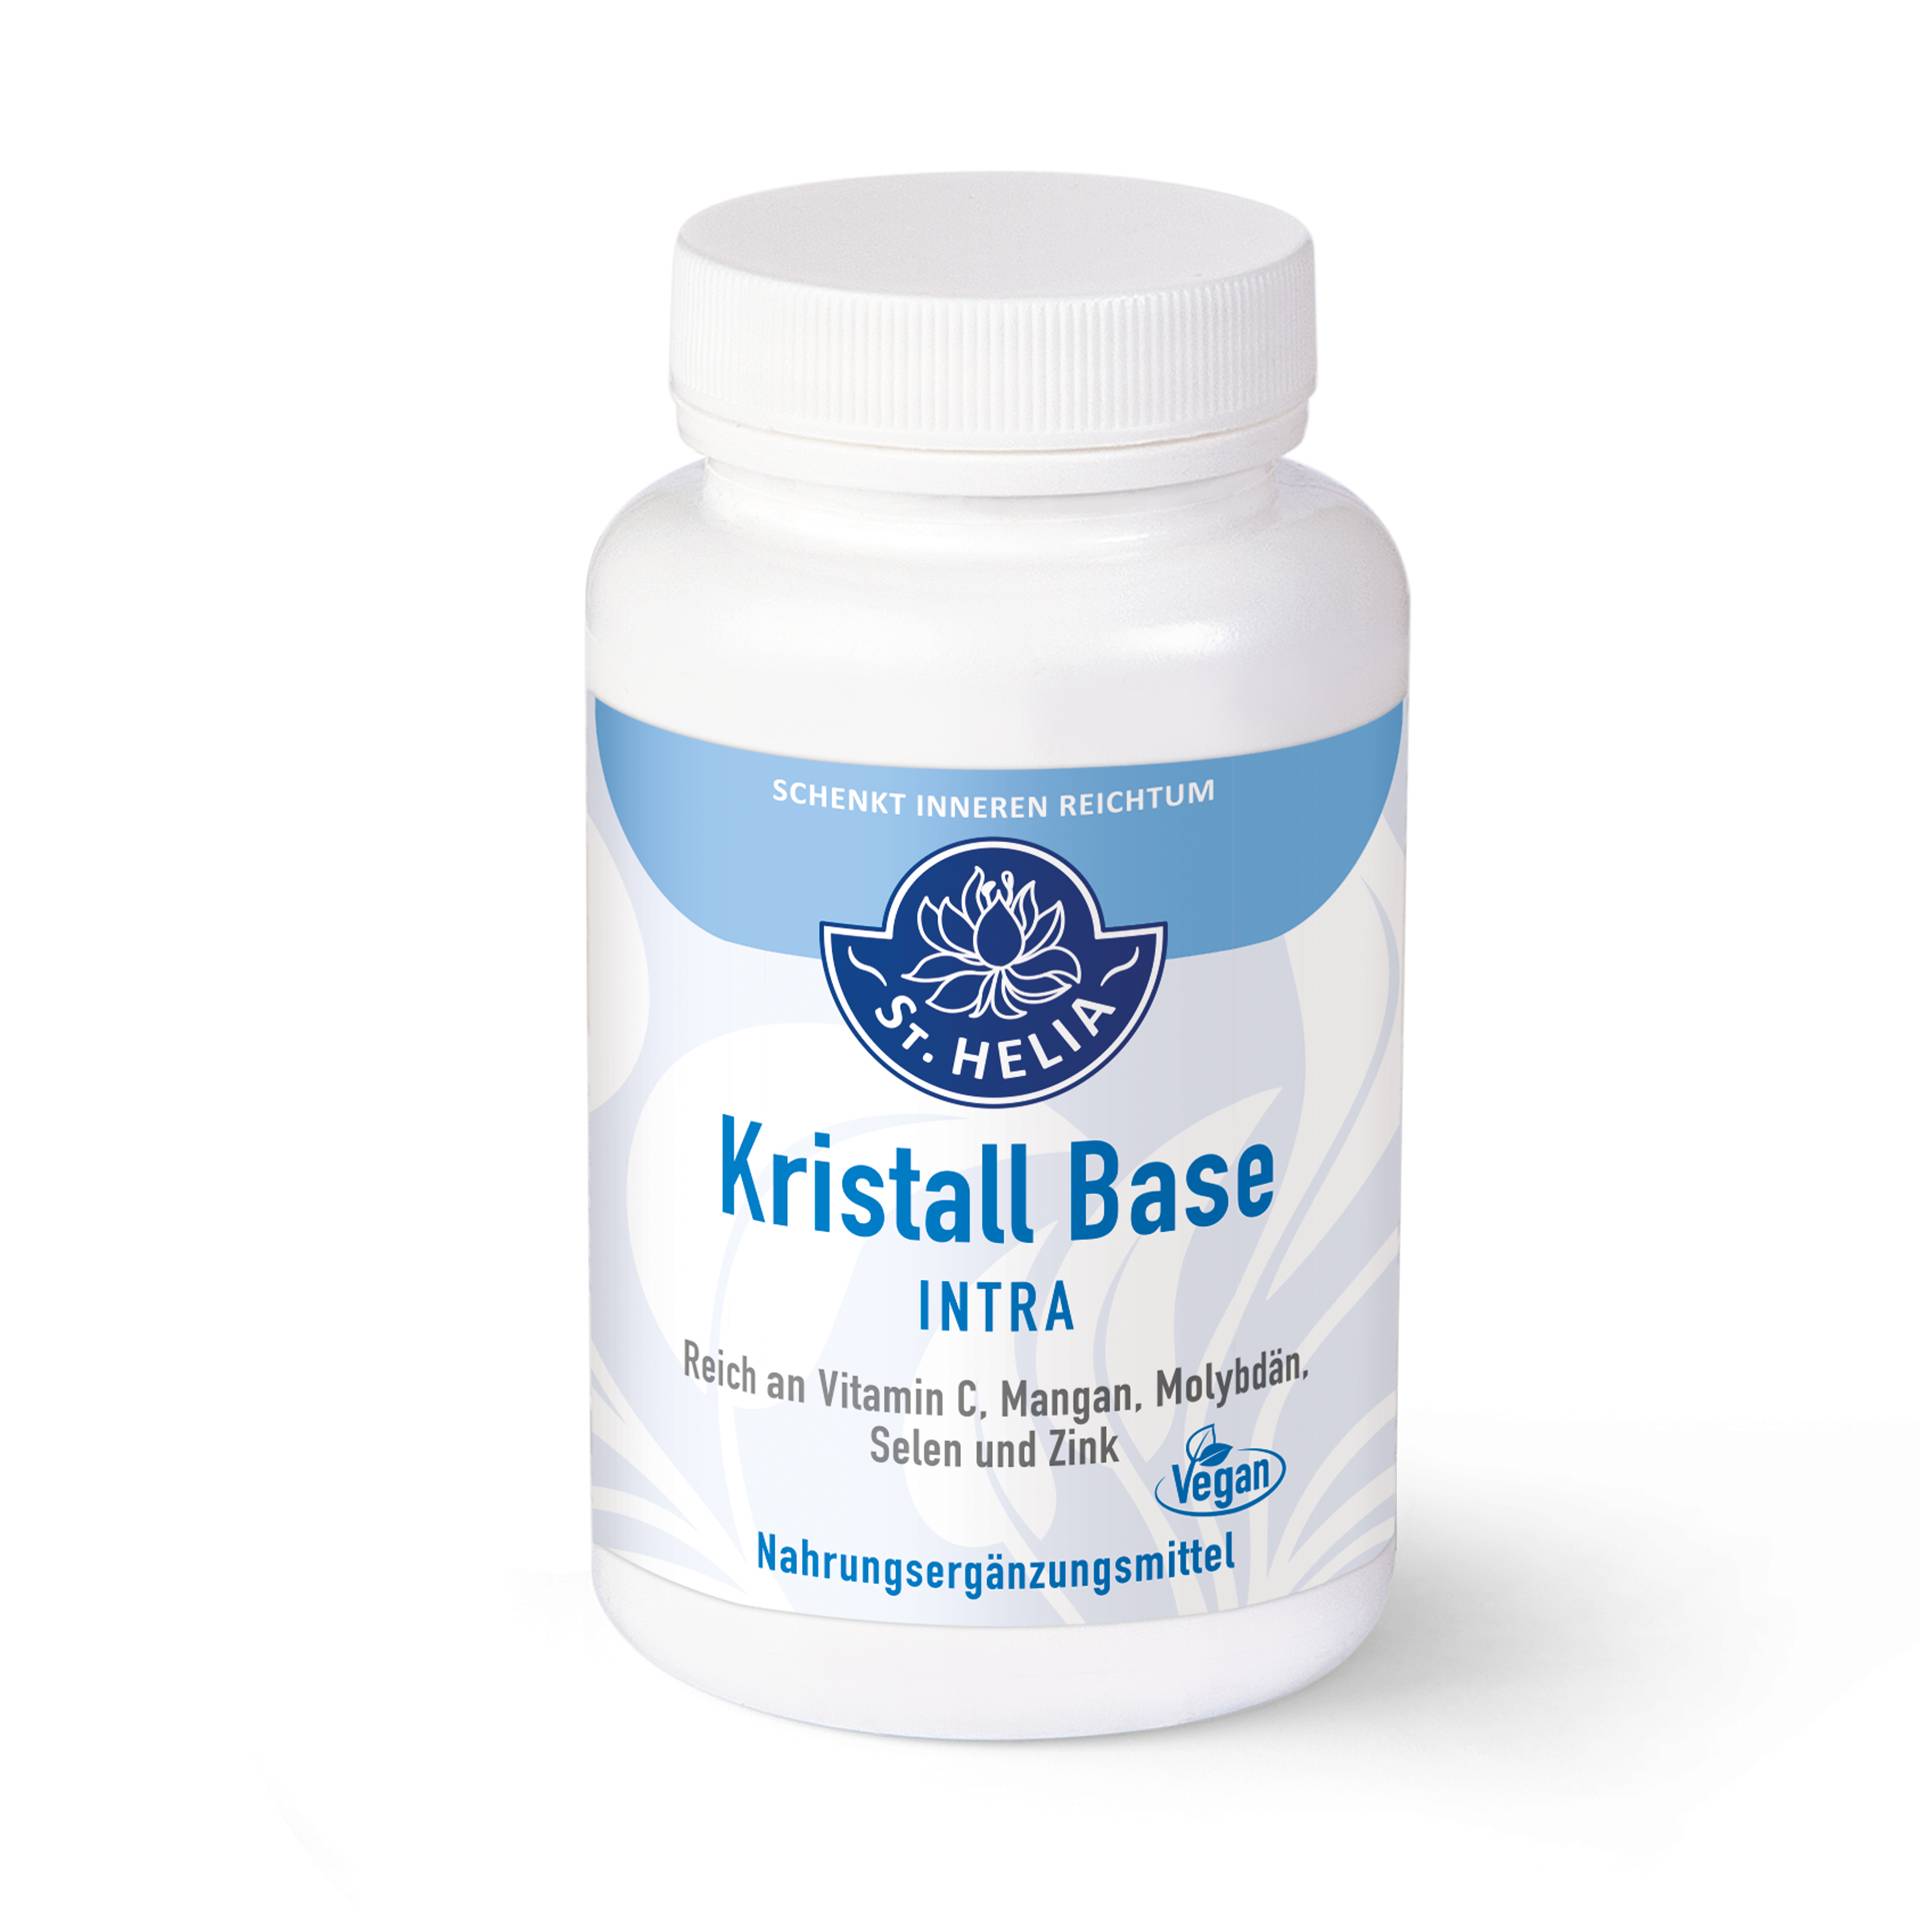 Kristall Base INTRA 150 Kapseln -Für einen ausgewogenen Säure-Basen-Haushalt - Vegan - St. Helia von St. Helia